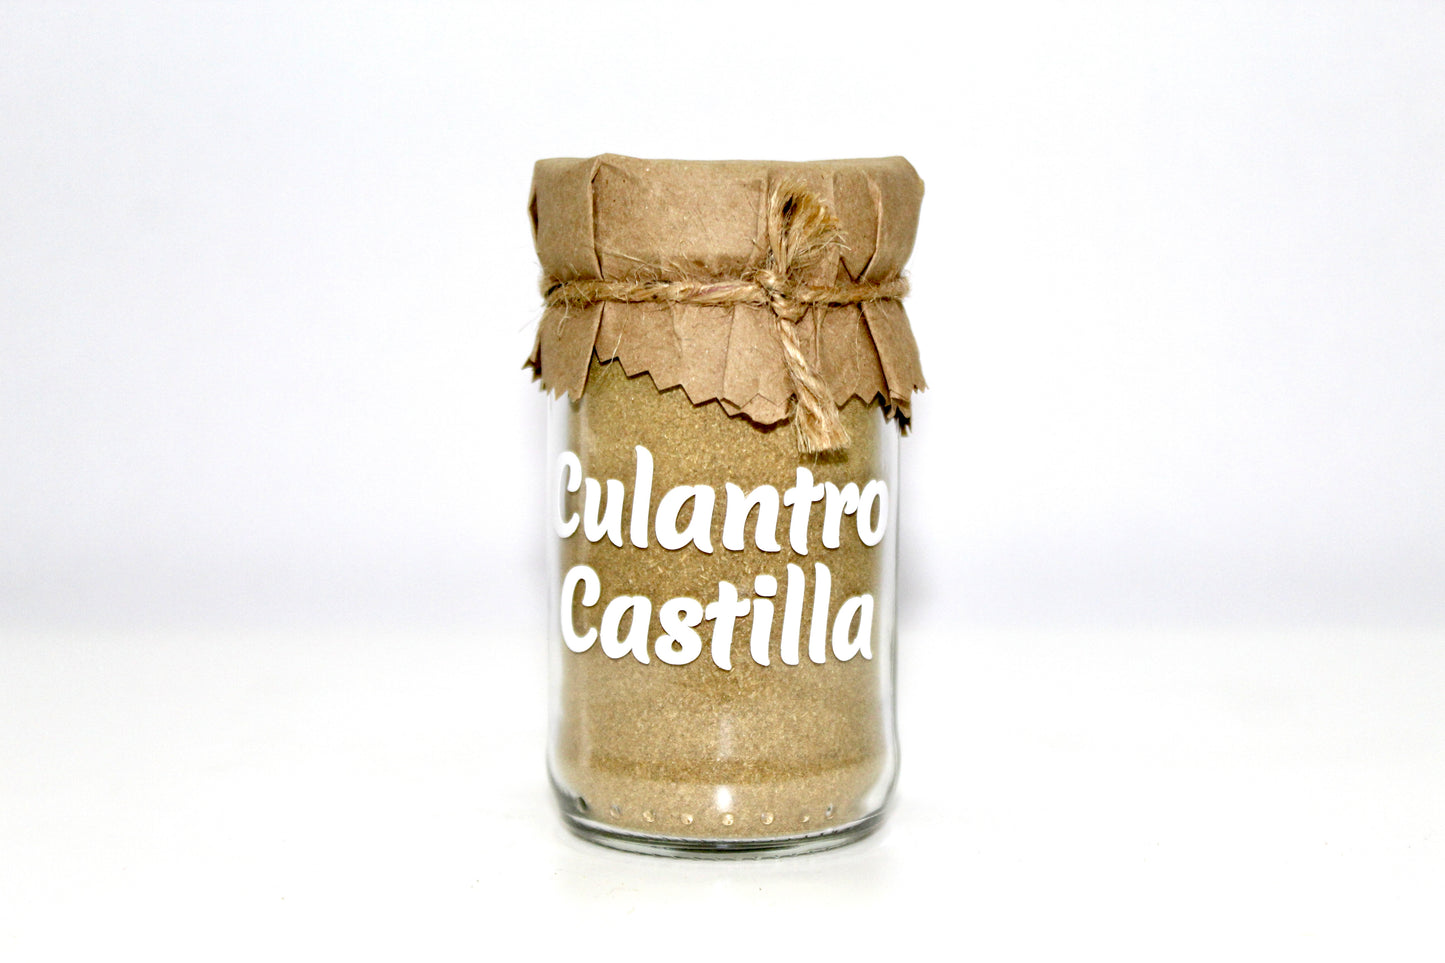 Culantro Castilla en polvo (35g)